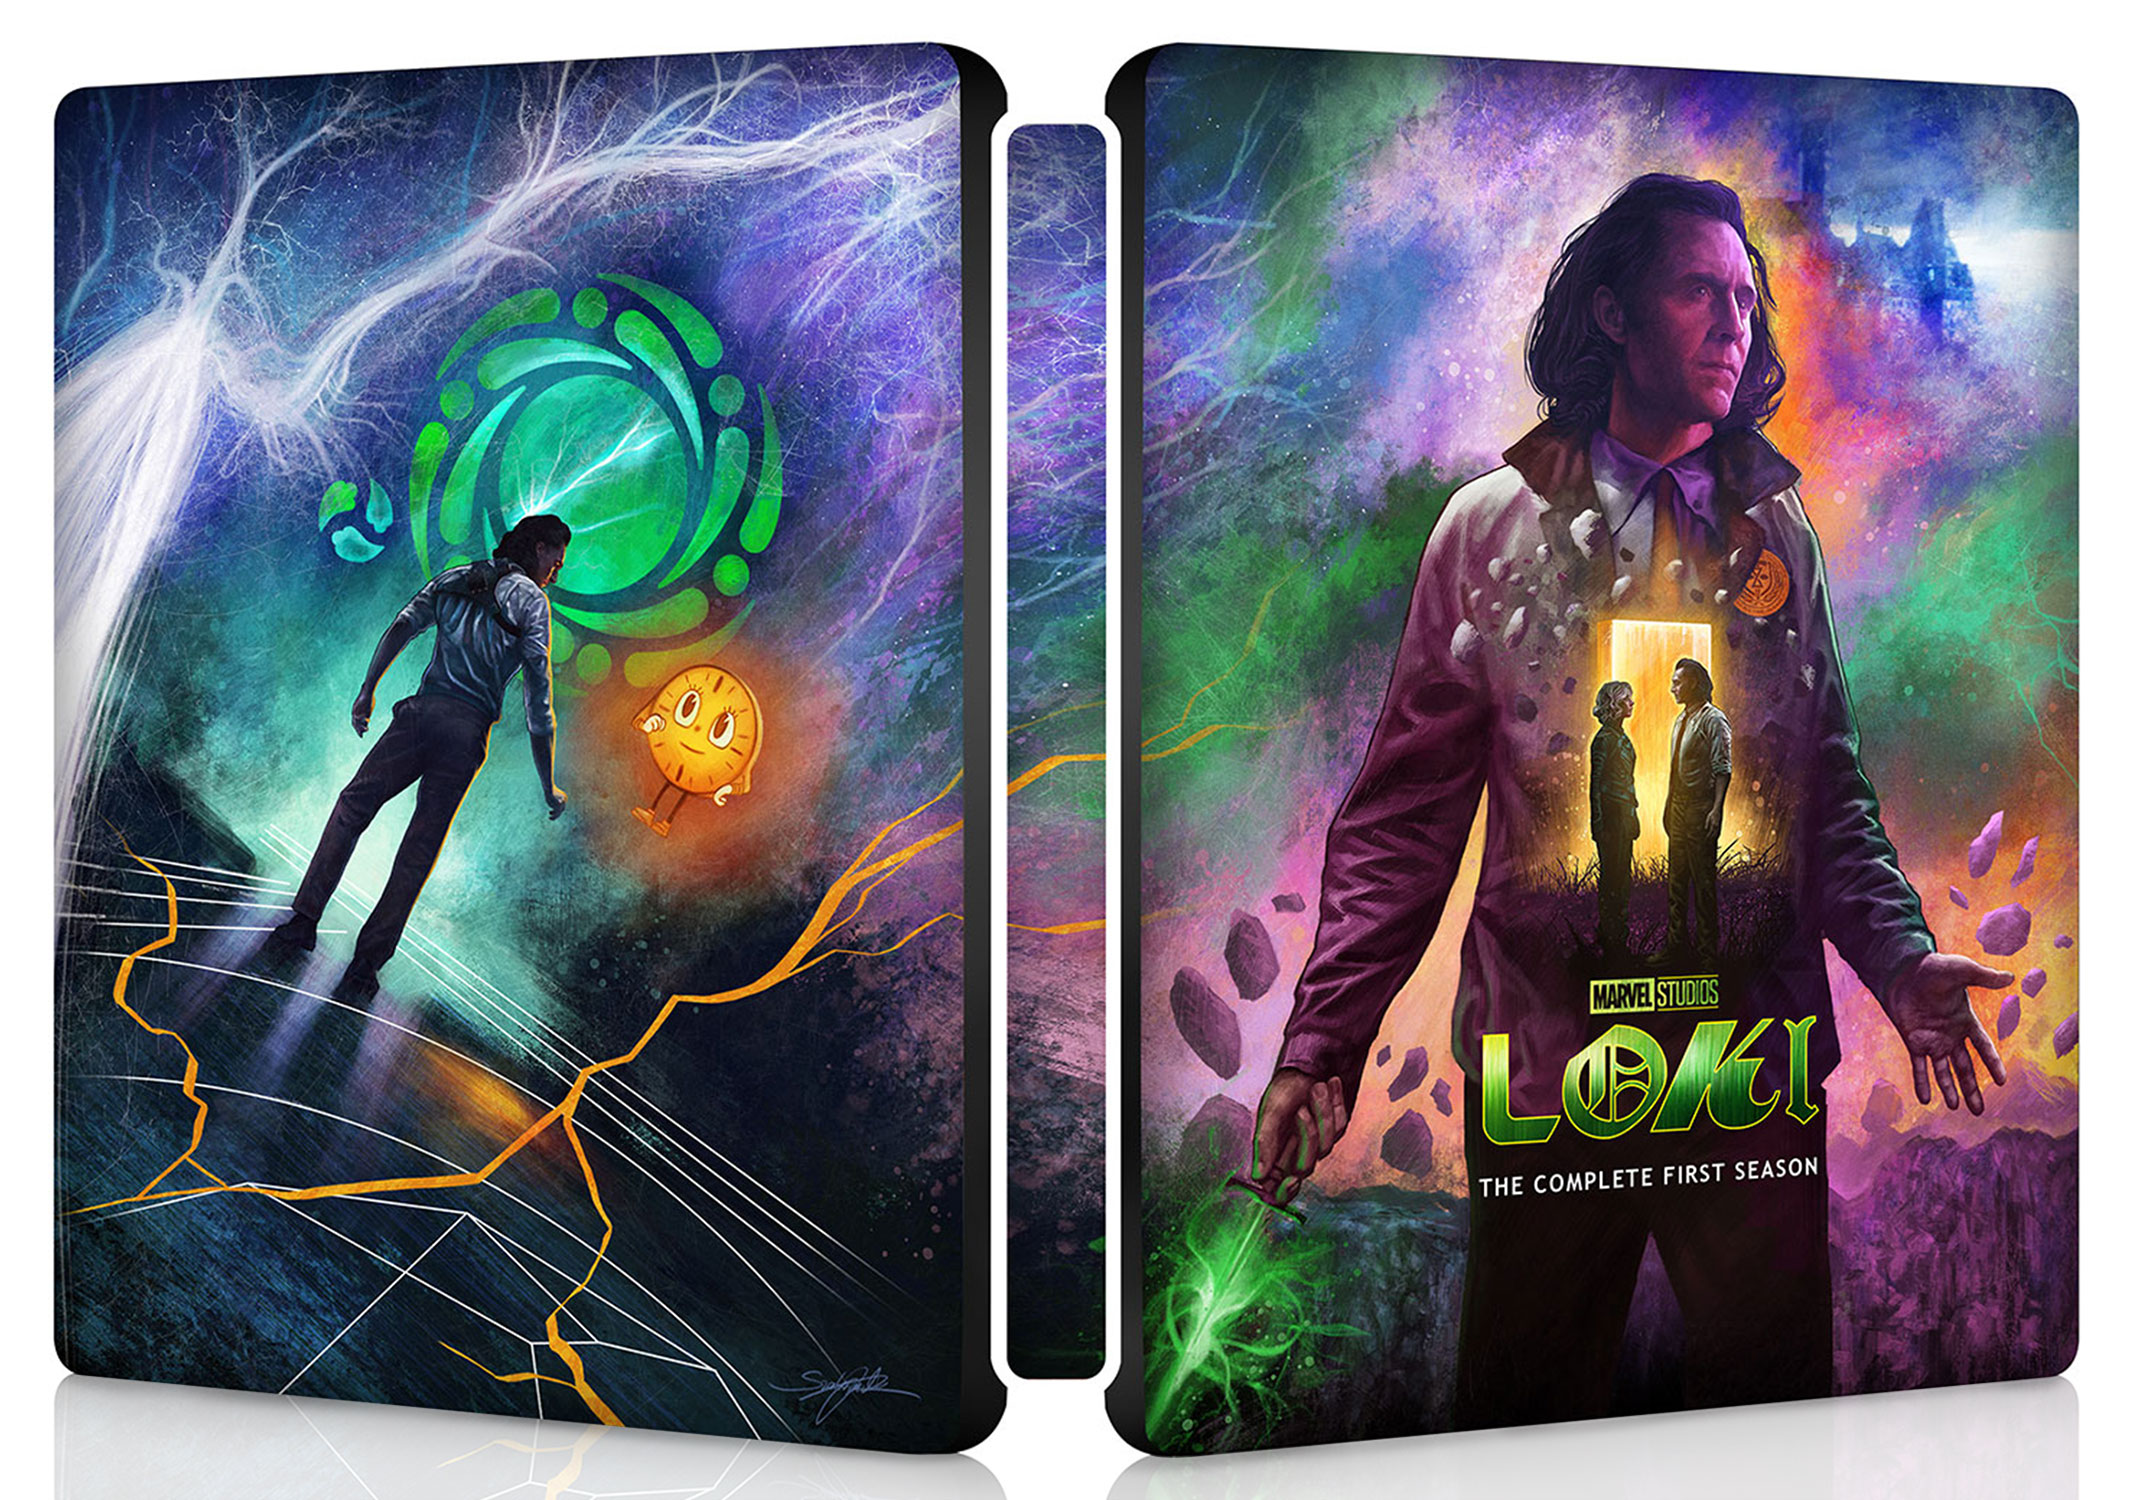 Official Disney Plus/Marvel-Loki Steelbook